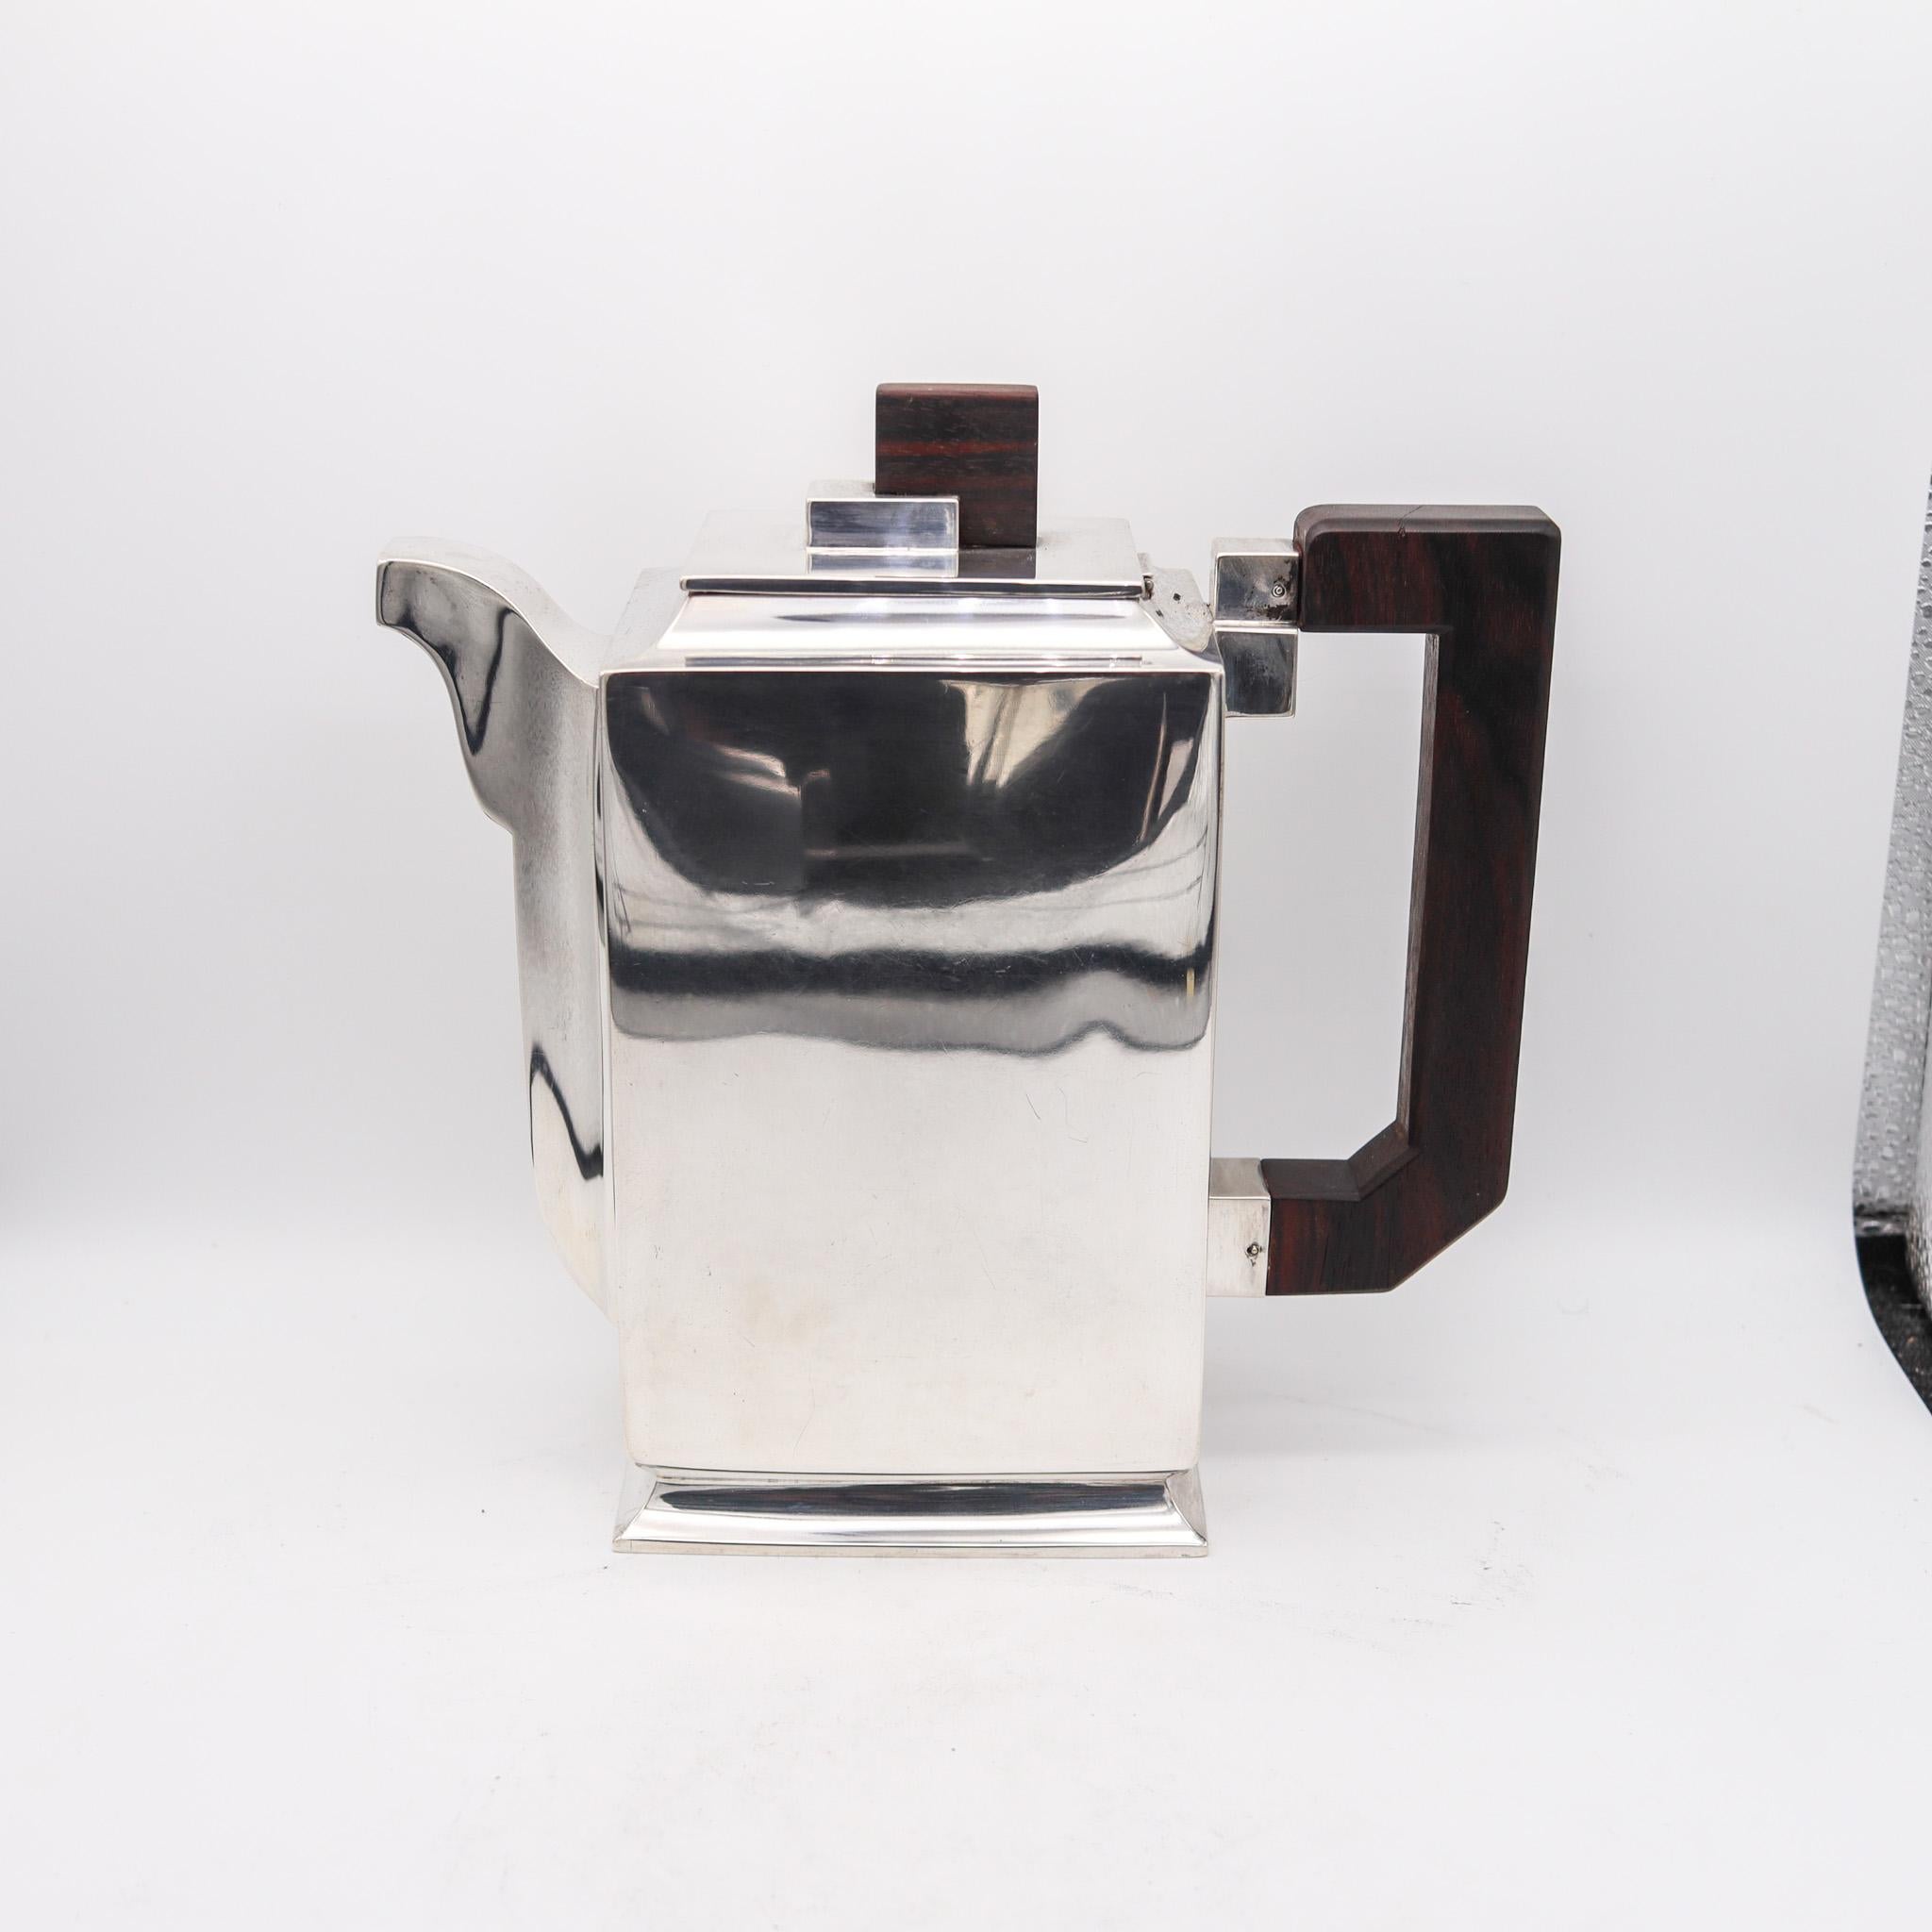 Ein Art-Deco-Kaffeeservice aus Silber und Ebenholz.

Dieses seltene Modell ist von sehr hoher Qualität und spiegelt den Geist des Art Déco und das geometrische Design der Zeit wider, wobei reiche Materialien wie Makassar-Ebenholz und Silber